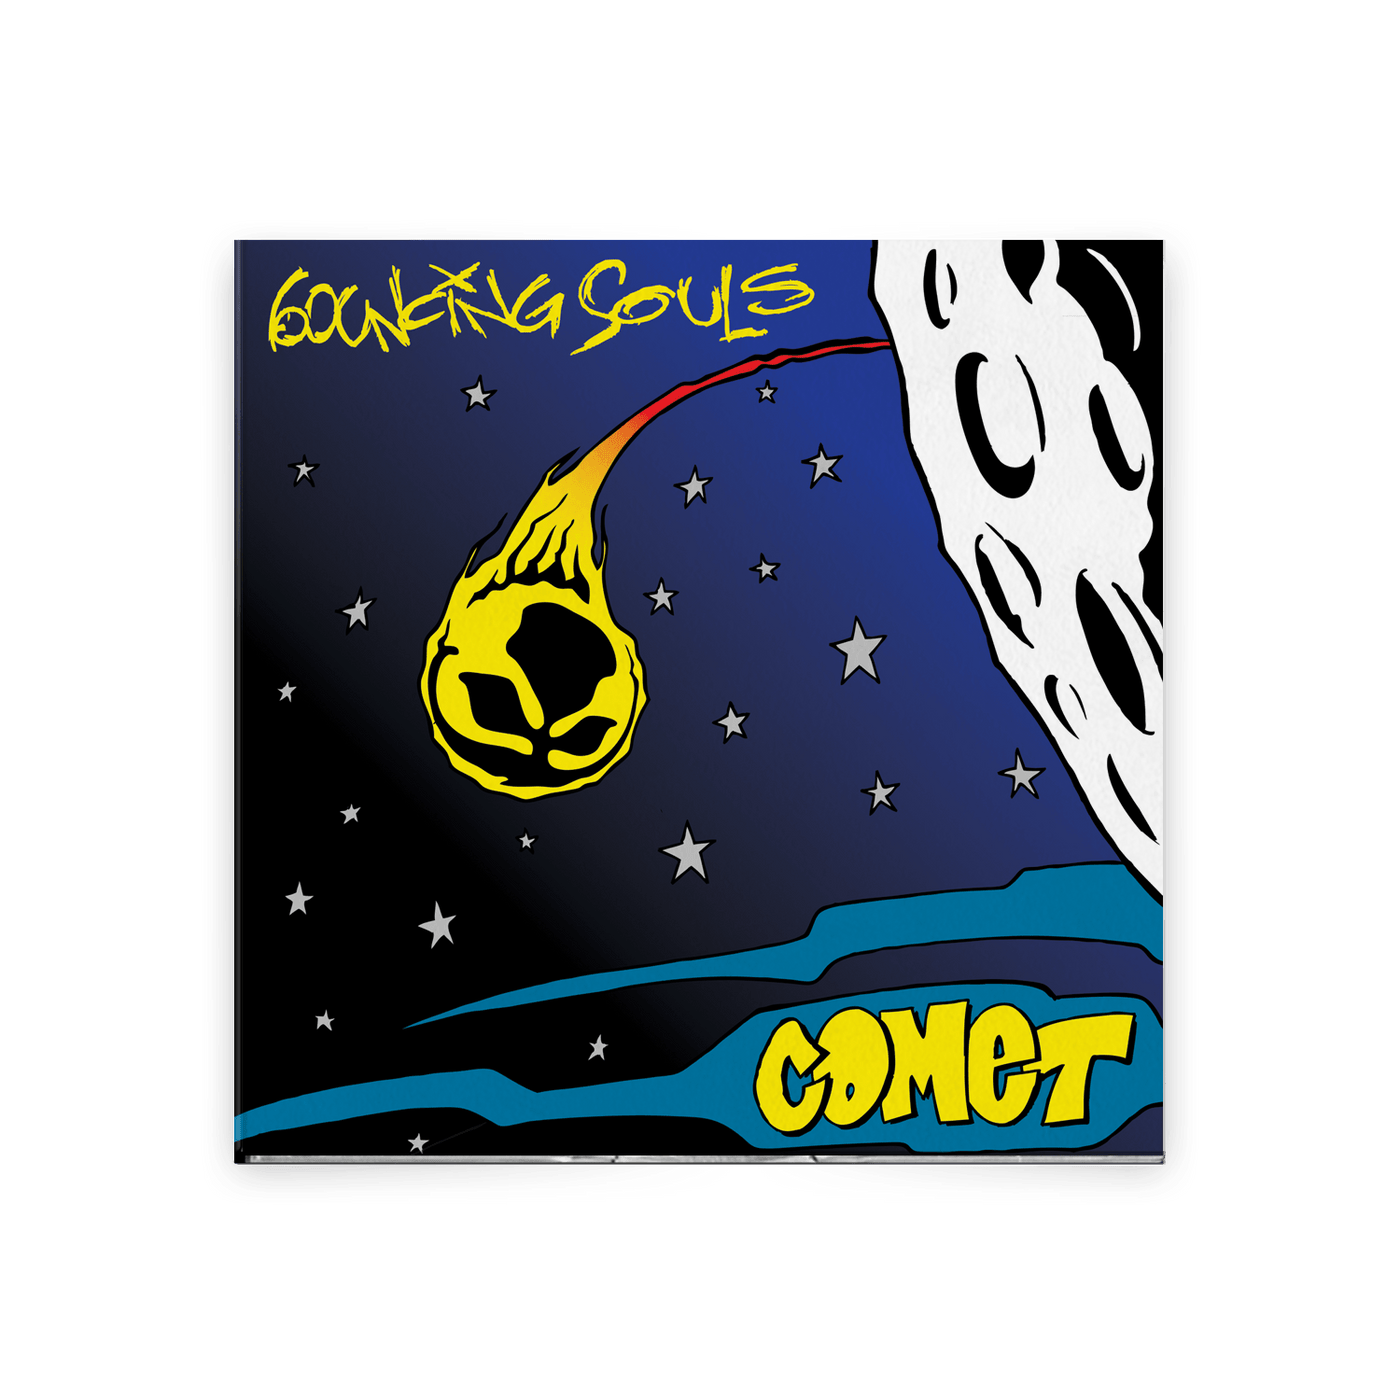 Comet CD